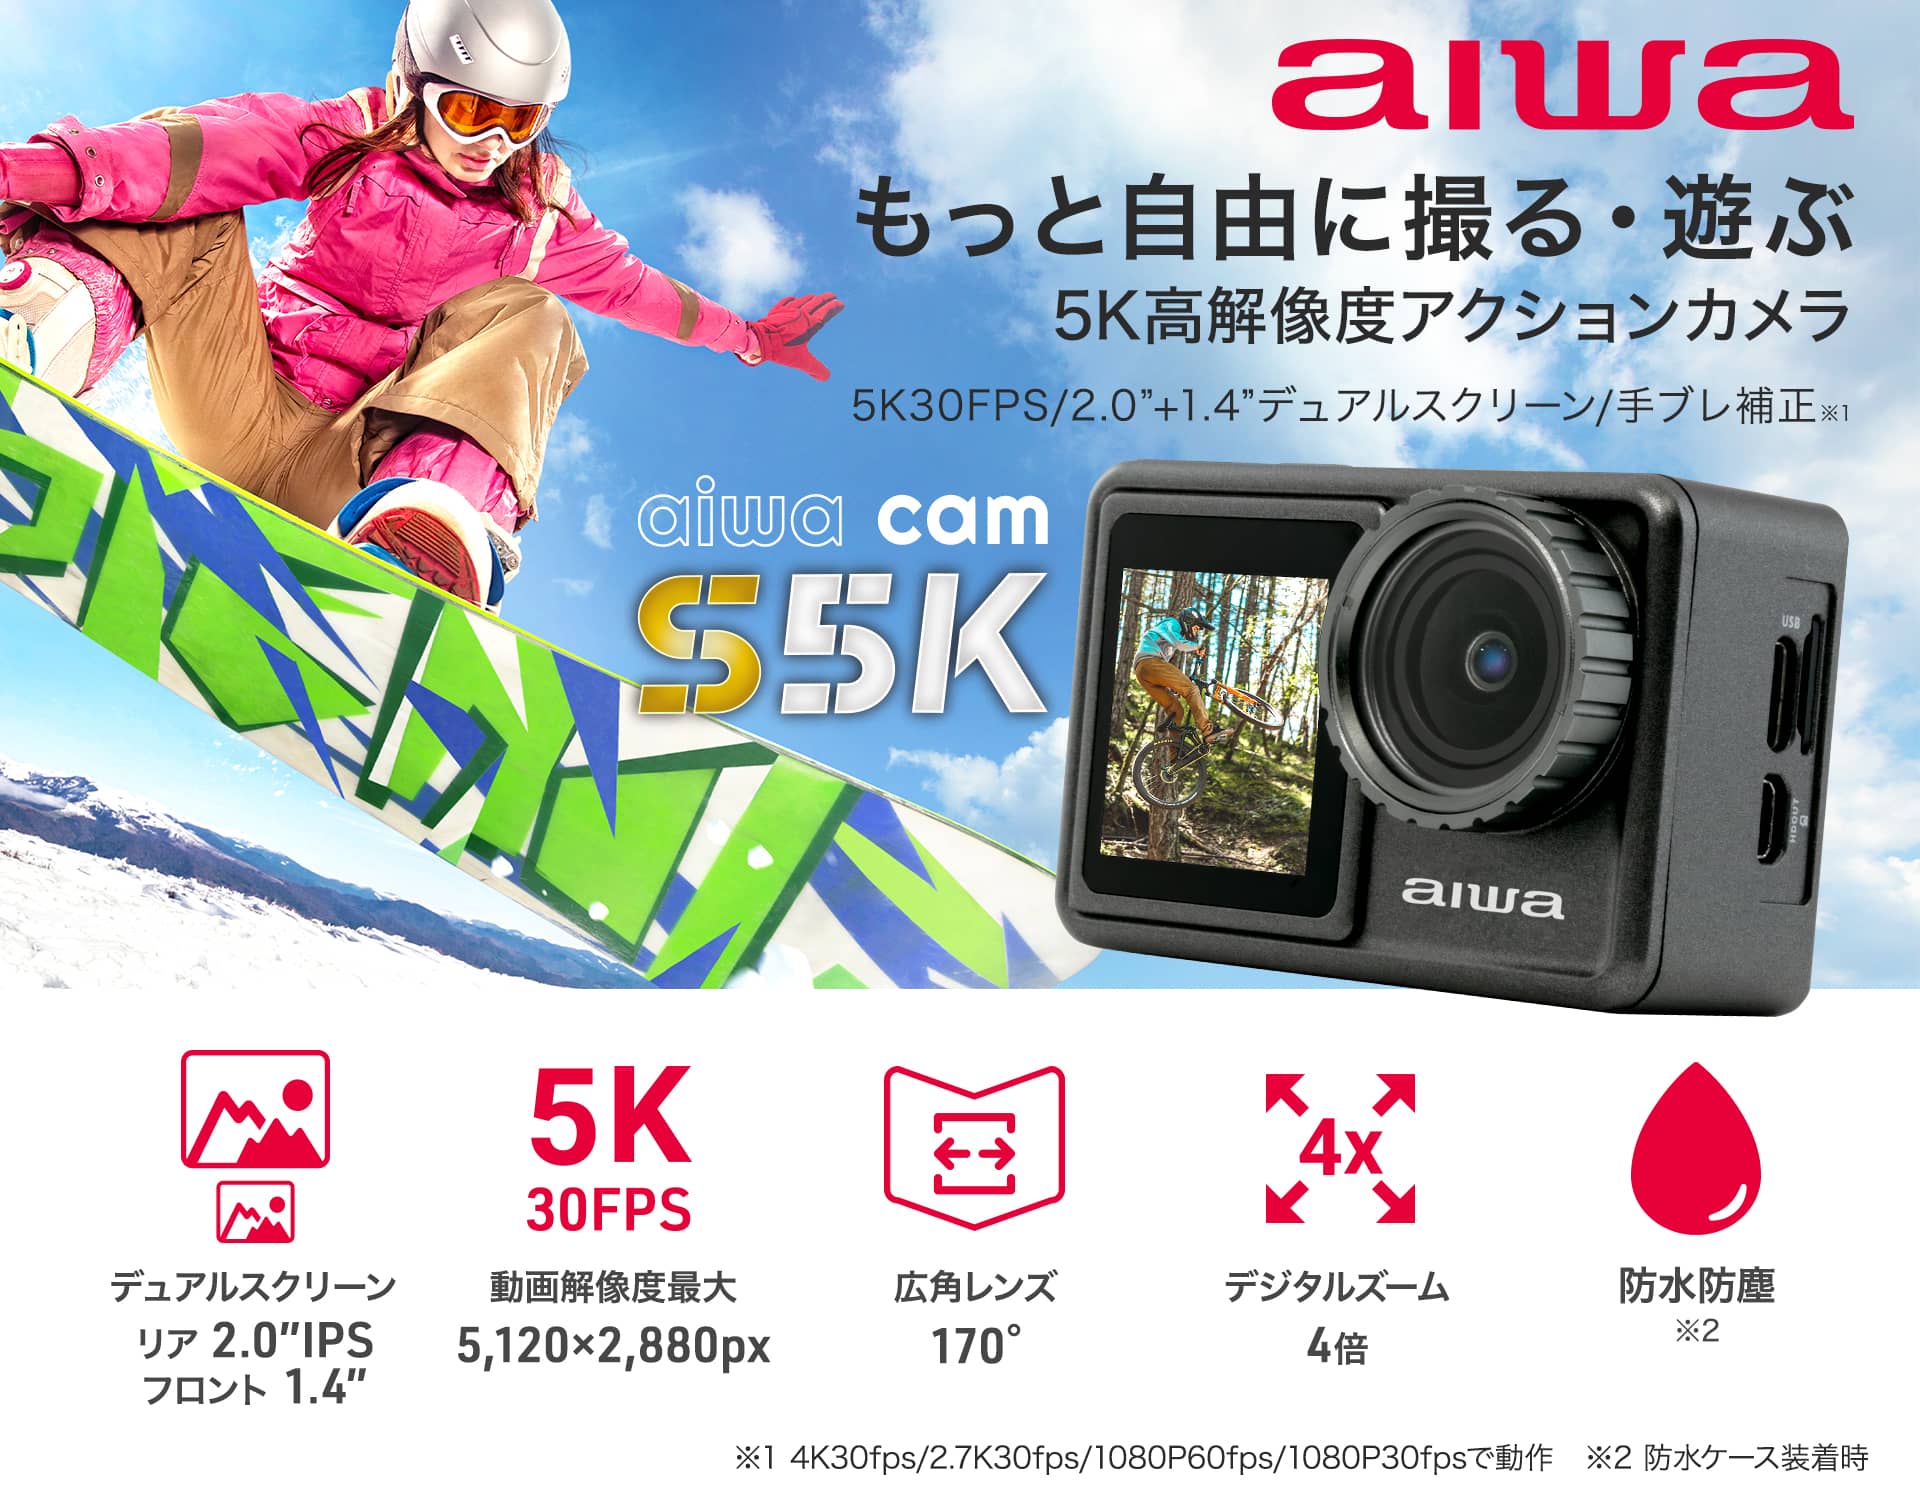 アクションカメラ aiwa cam S5K【JA3-ACM0001-D】